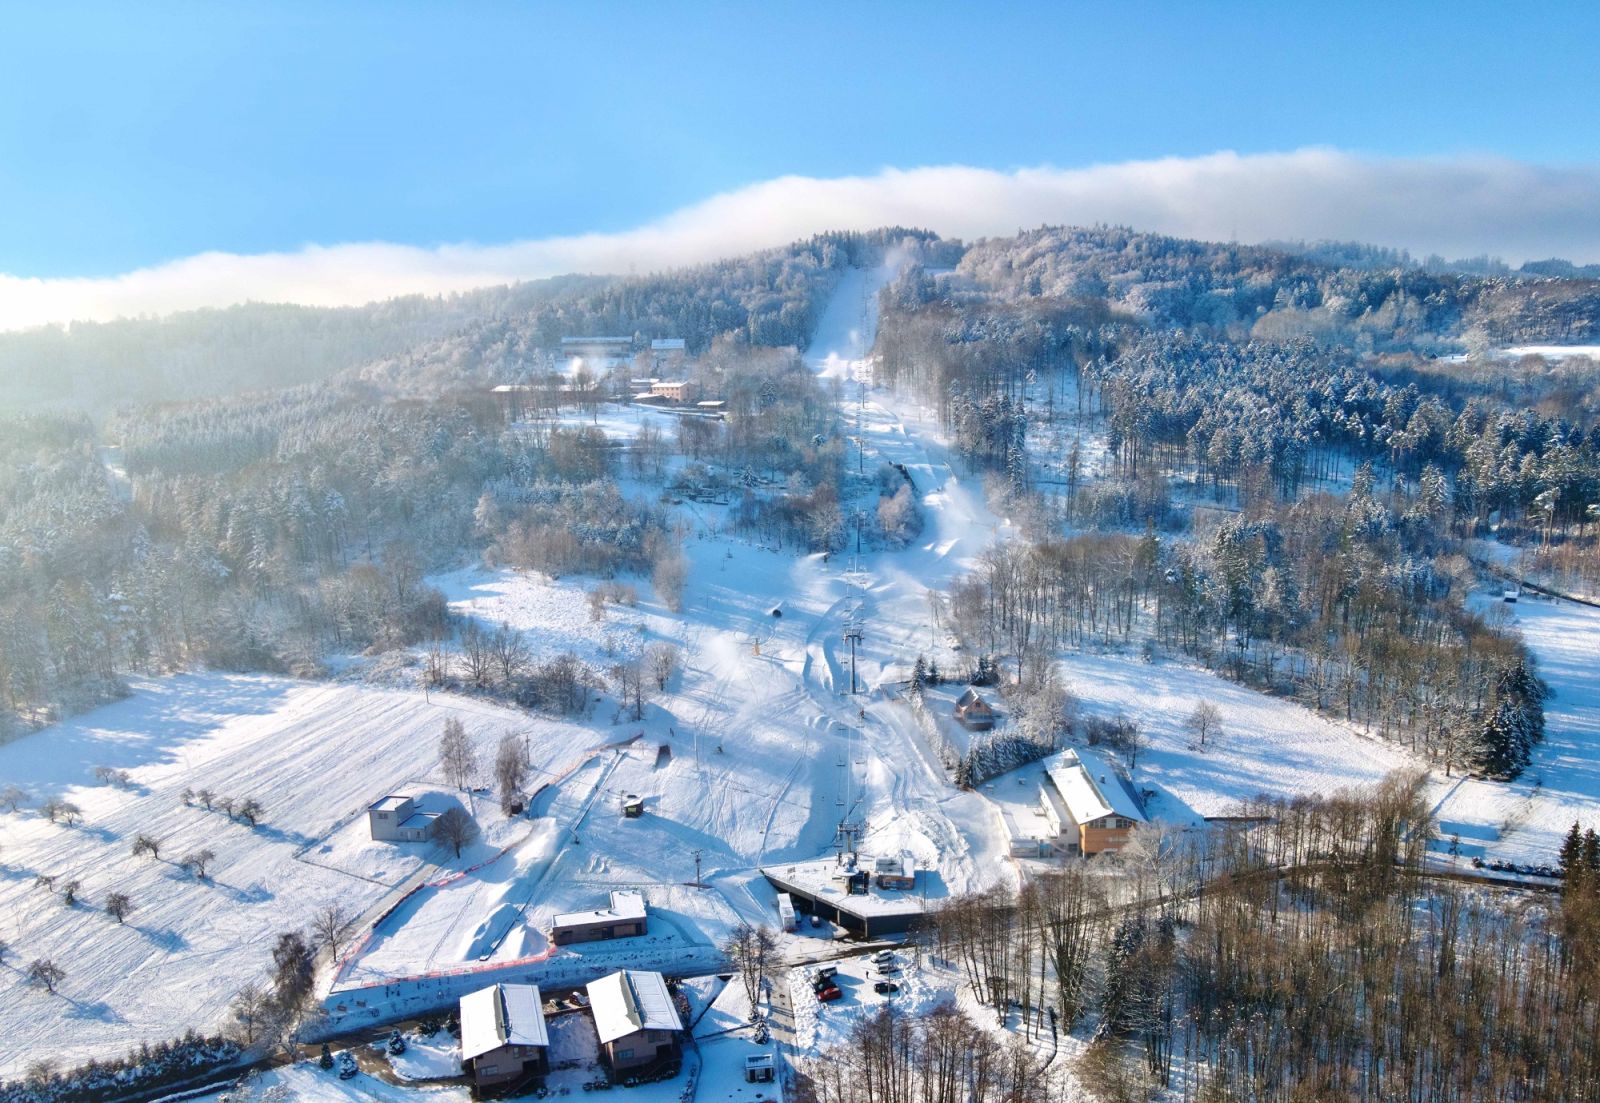 Lyžařská sezóna na Monínci začala se 70 cm sněhu a pokračuje večerním lyžováním ve všední dny i sobotu